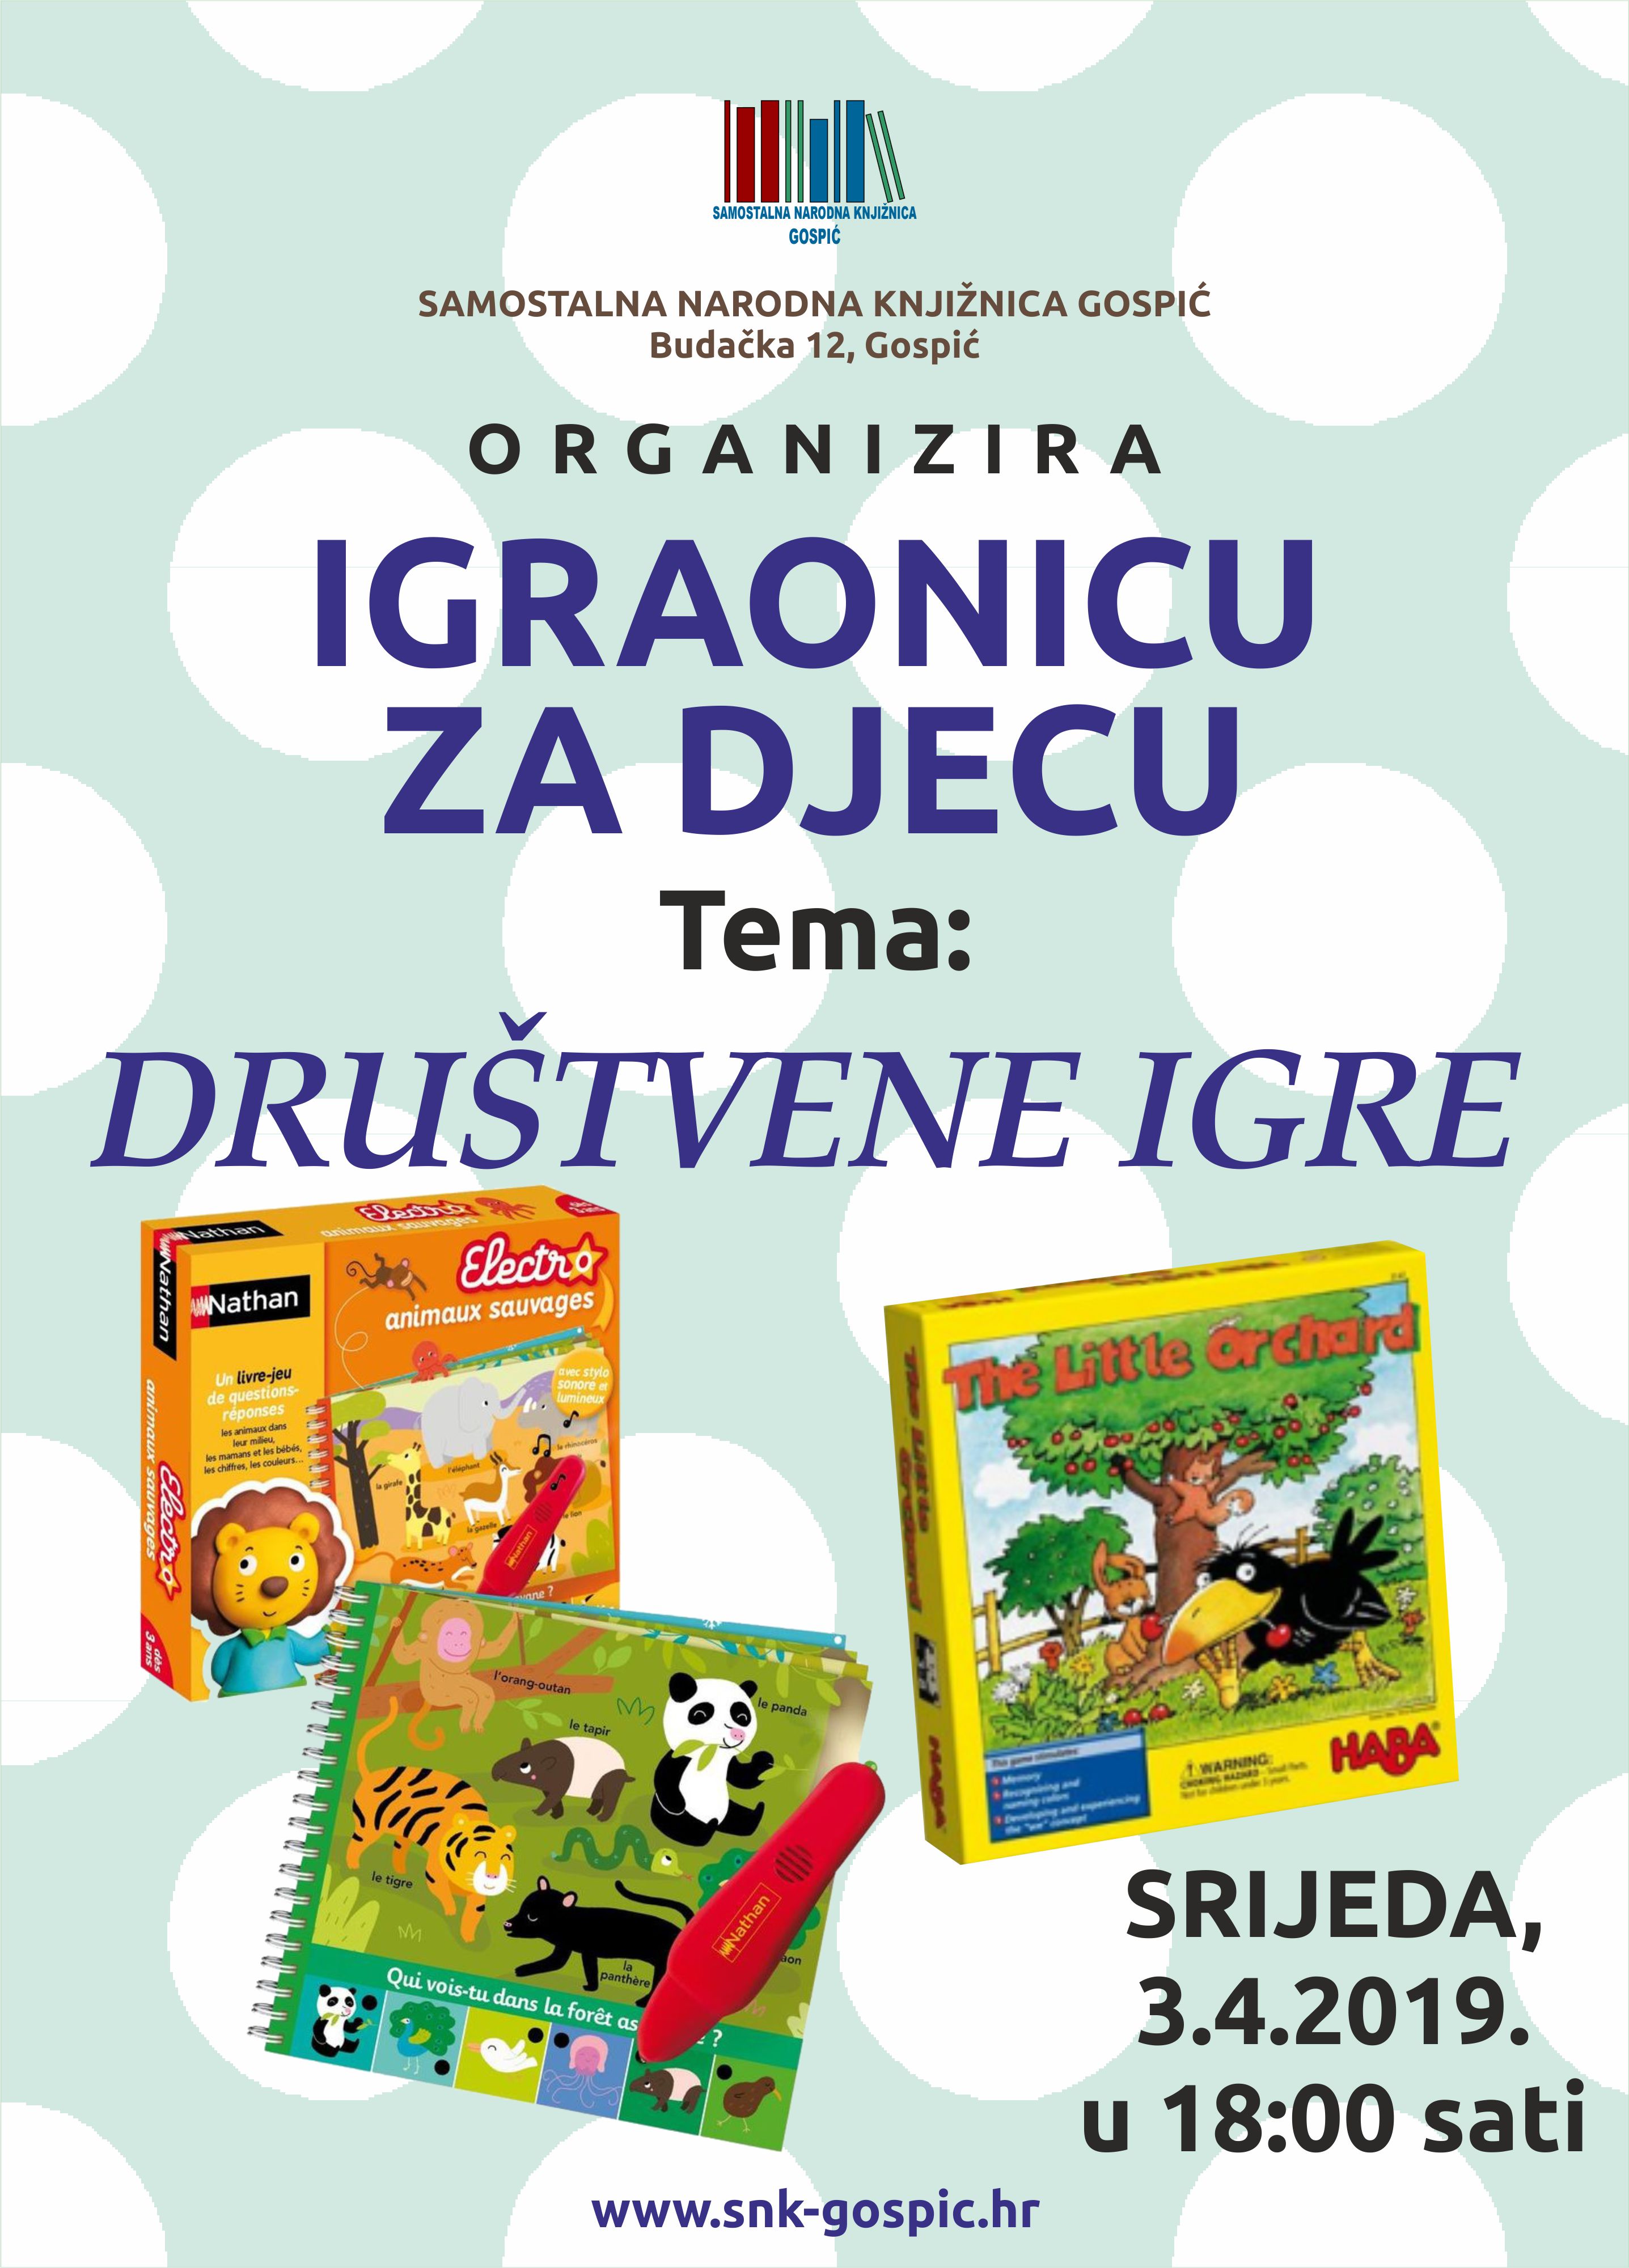 DRUŠTVENE IGRE – 03.04.2019.